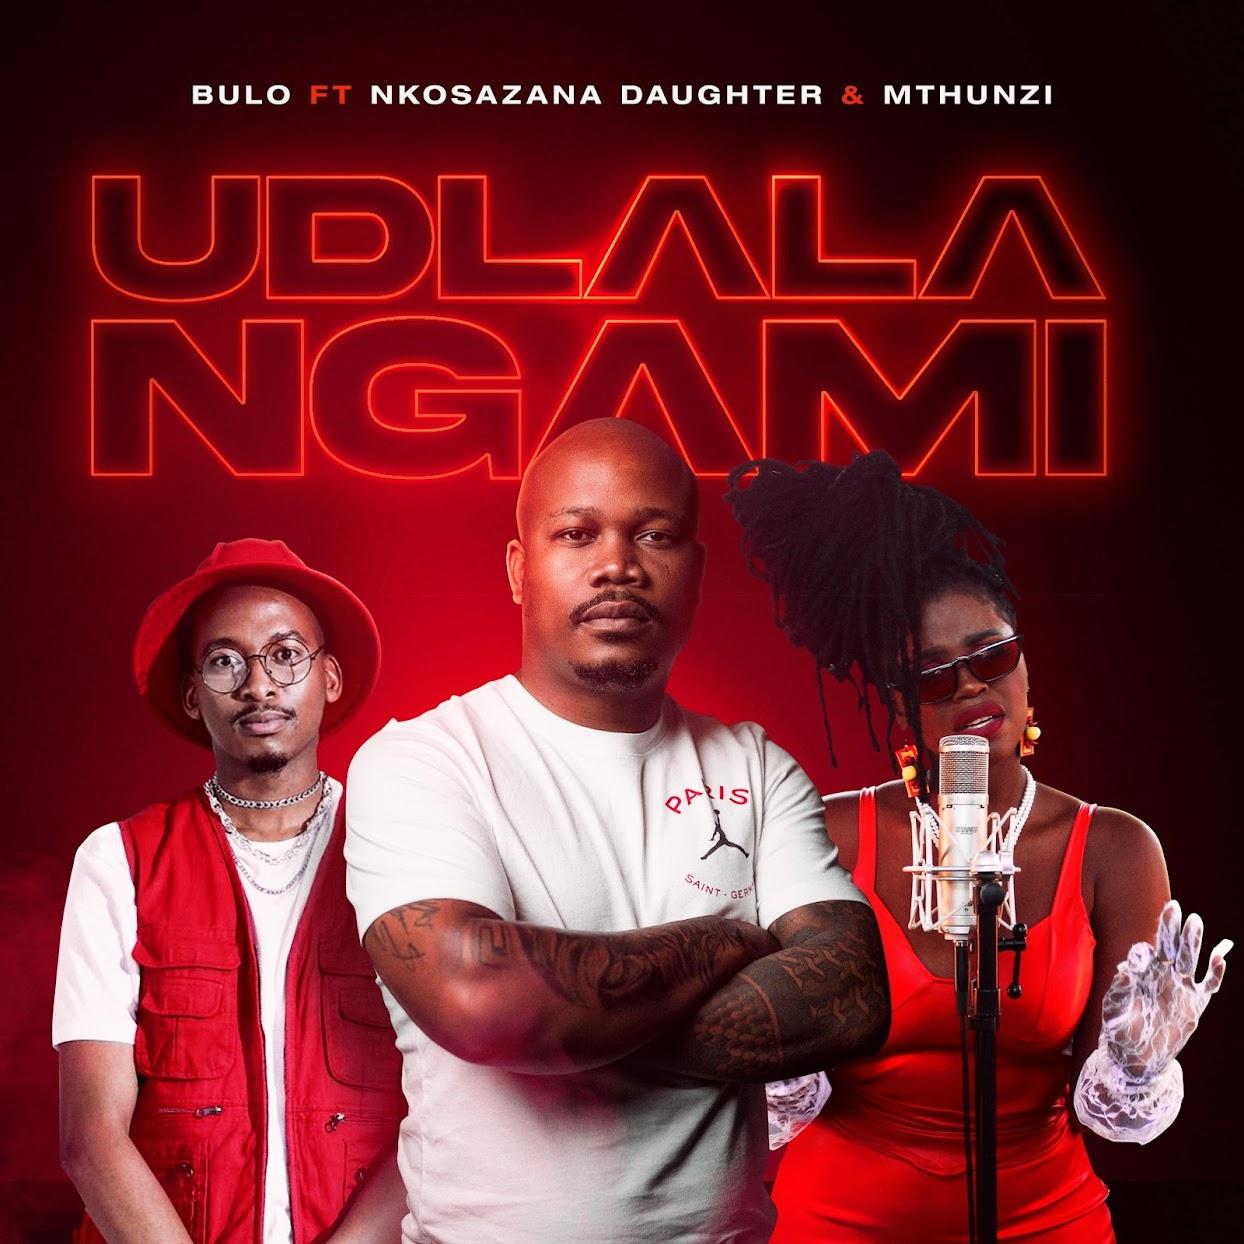 Bulo – Udlala Ngami (feat. Nkosazana Daughter & Mthunzi)